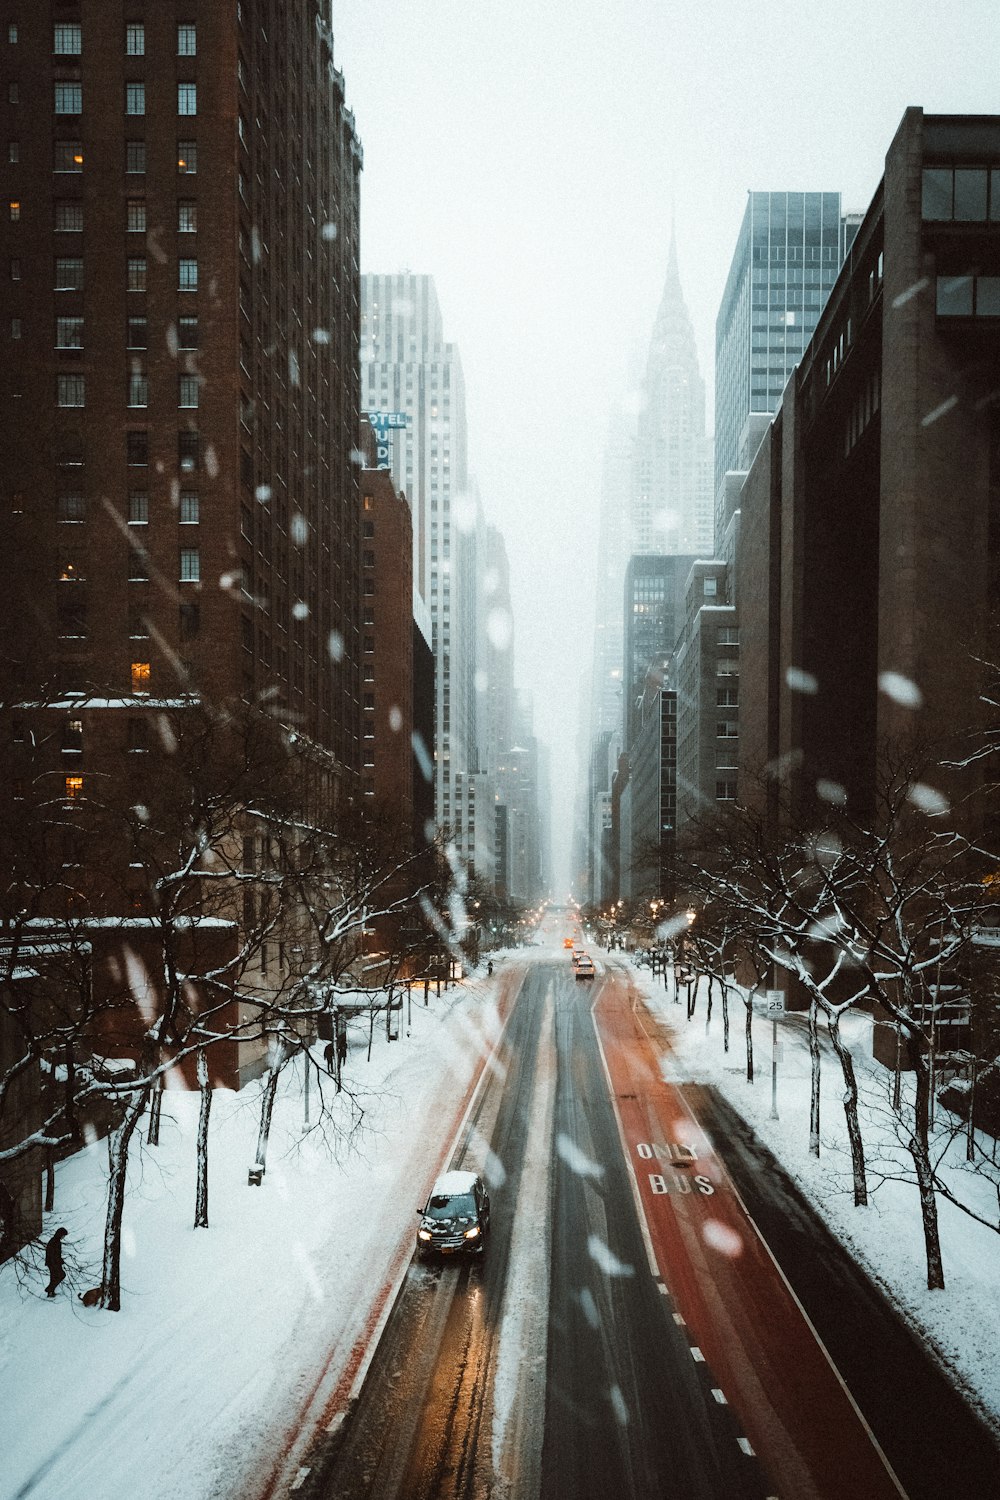 Straße zwischen Hochhäusern im Winter